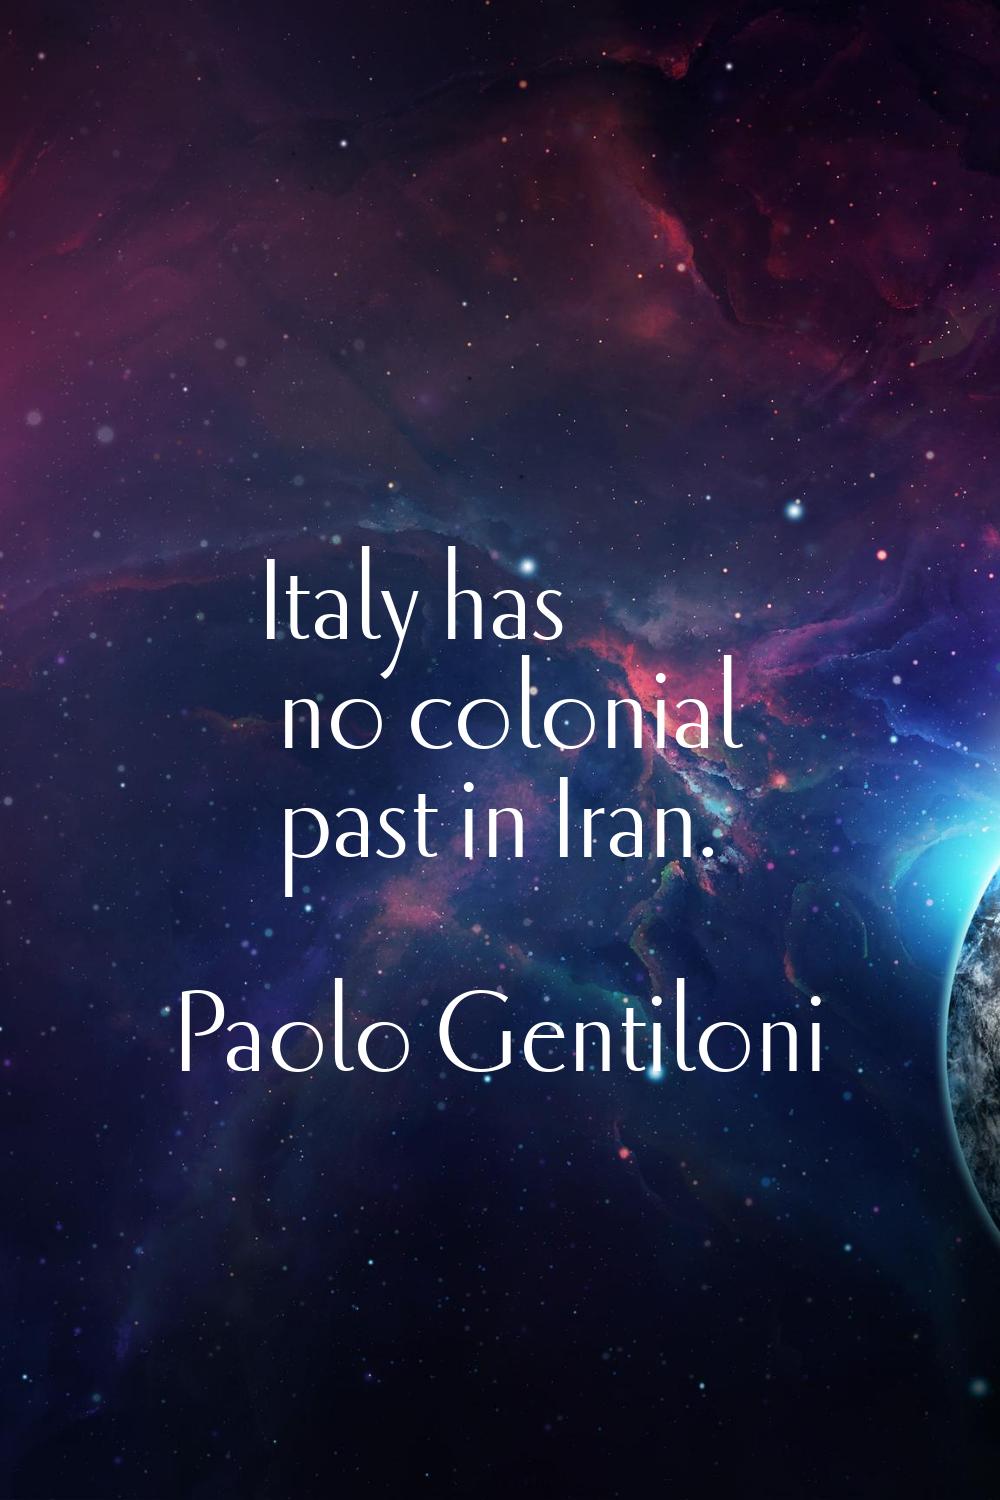 Italy has no colonial past in Iran.